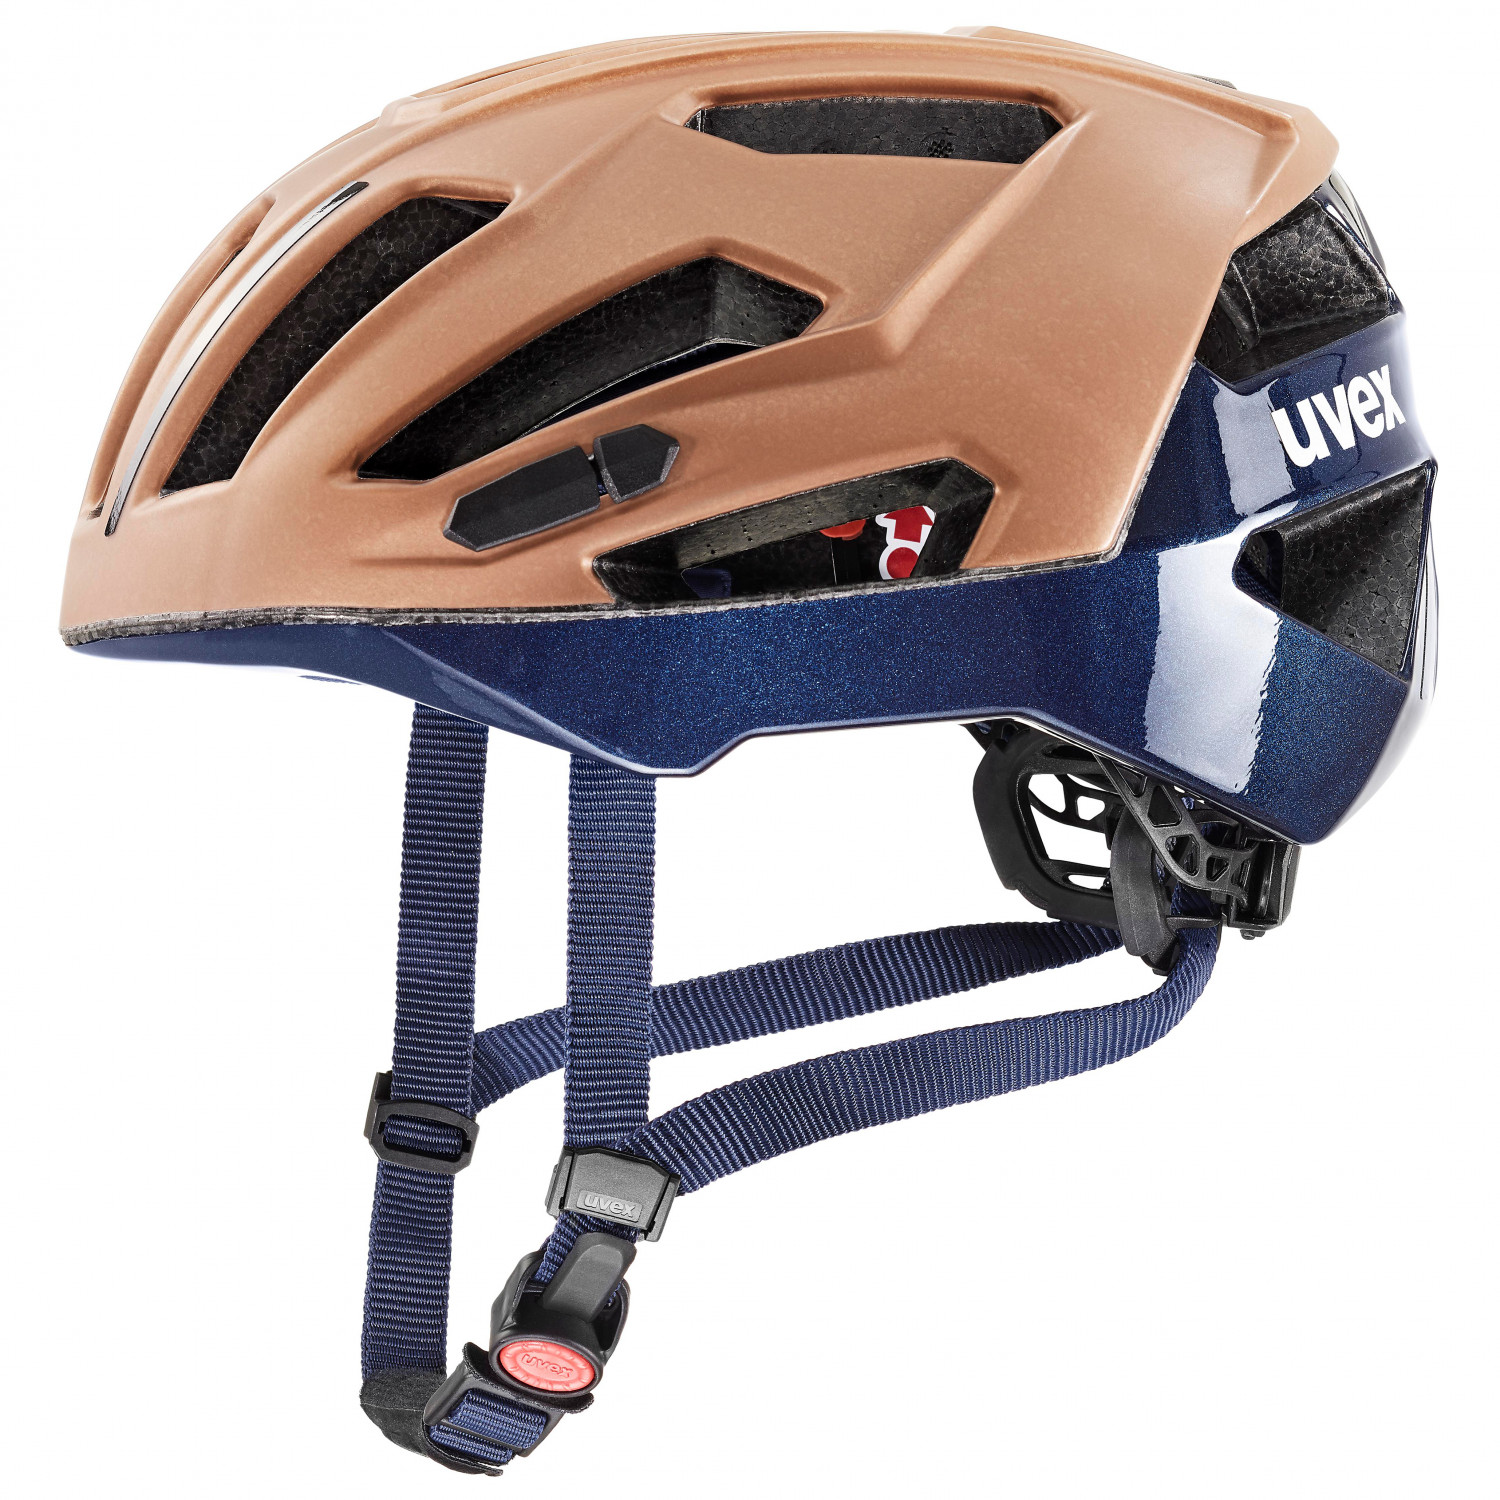 Велосипедный шлем Uvex Gravel X, цвет Hazel/Deep Space Matt шлем велосипедный с вентиляционными отверстиями с фонарем 57 62 см yxe009 rockbros